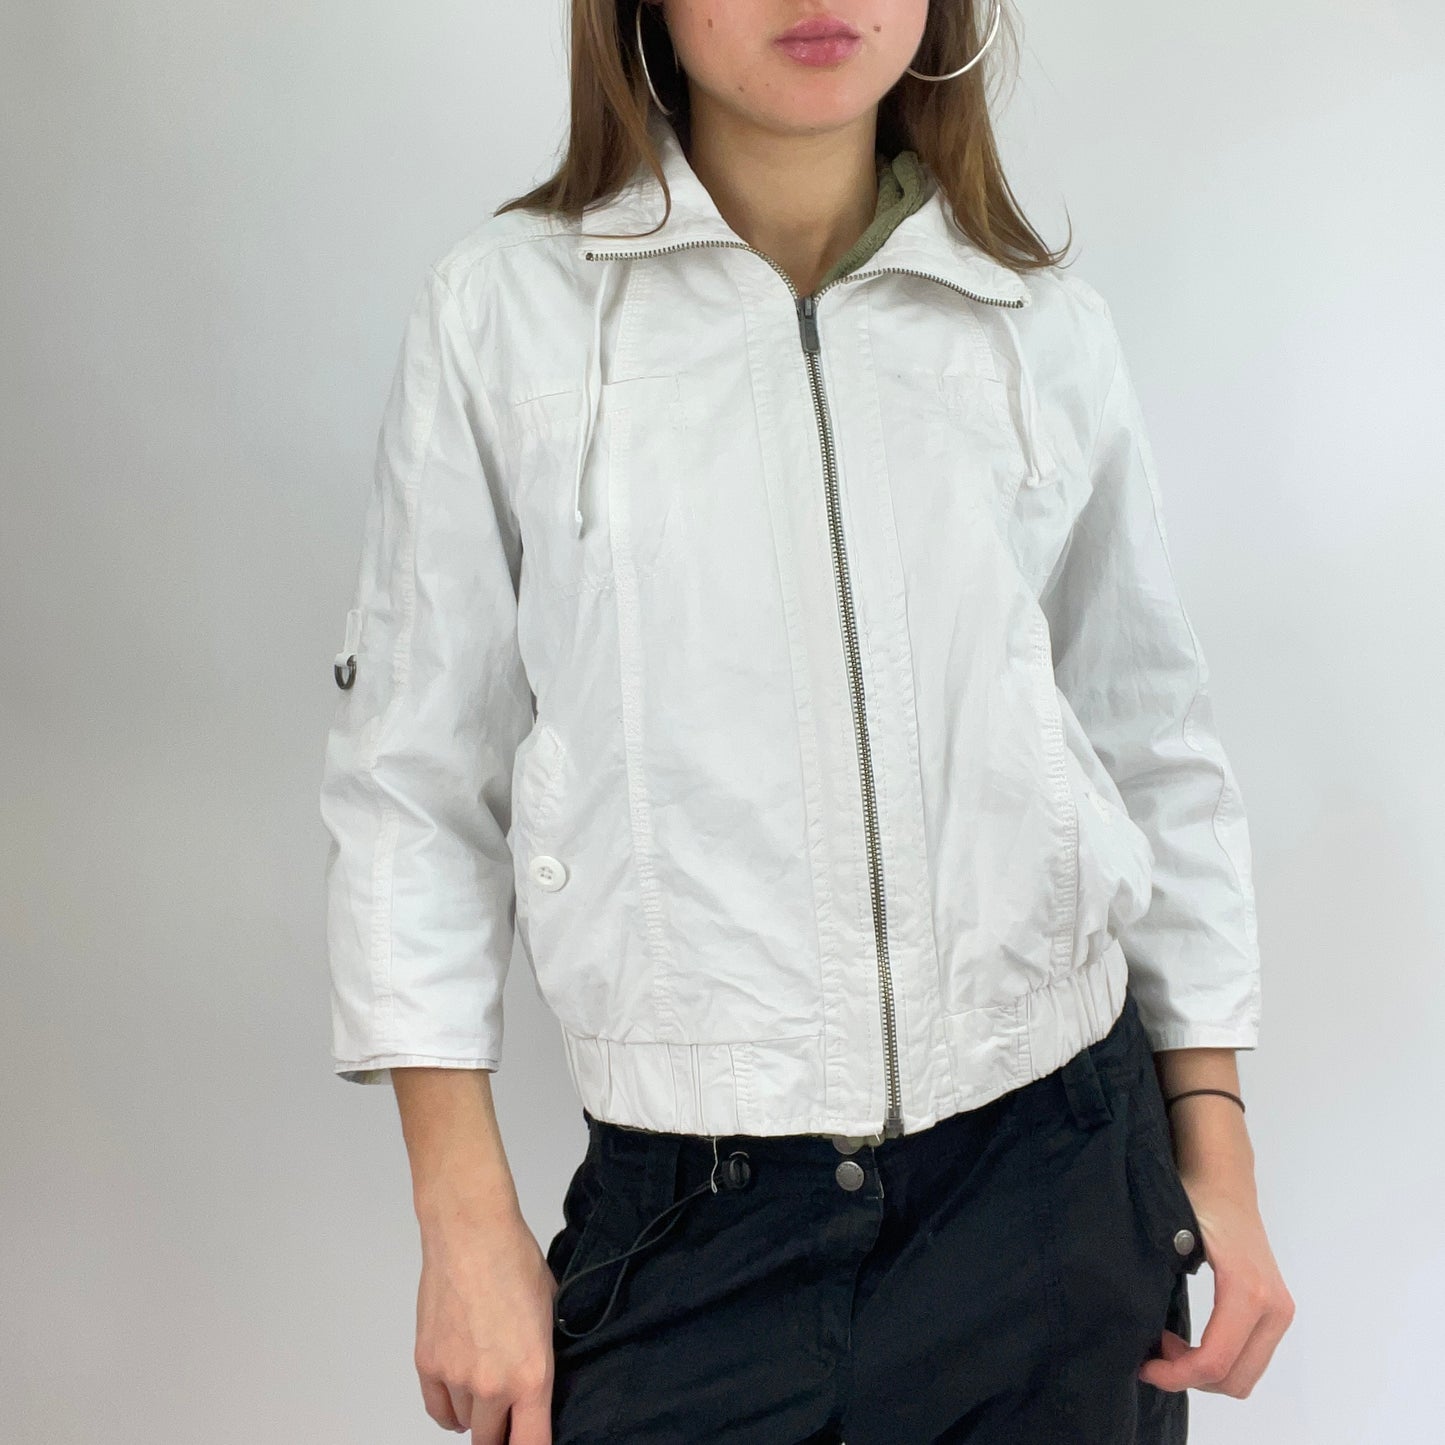 BLOKECORE DROP | xs white zip up jacket